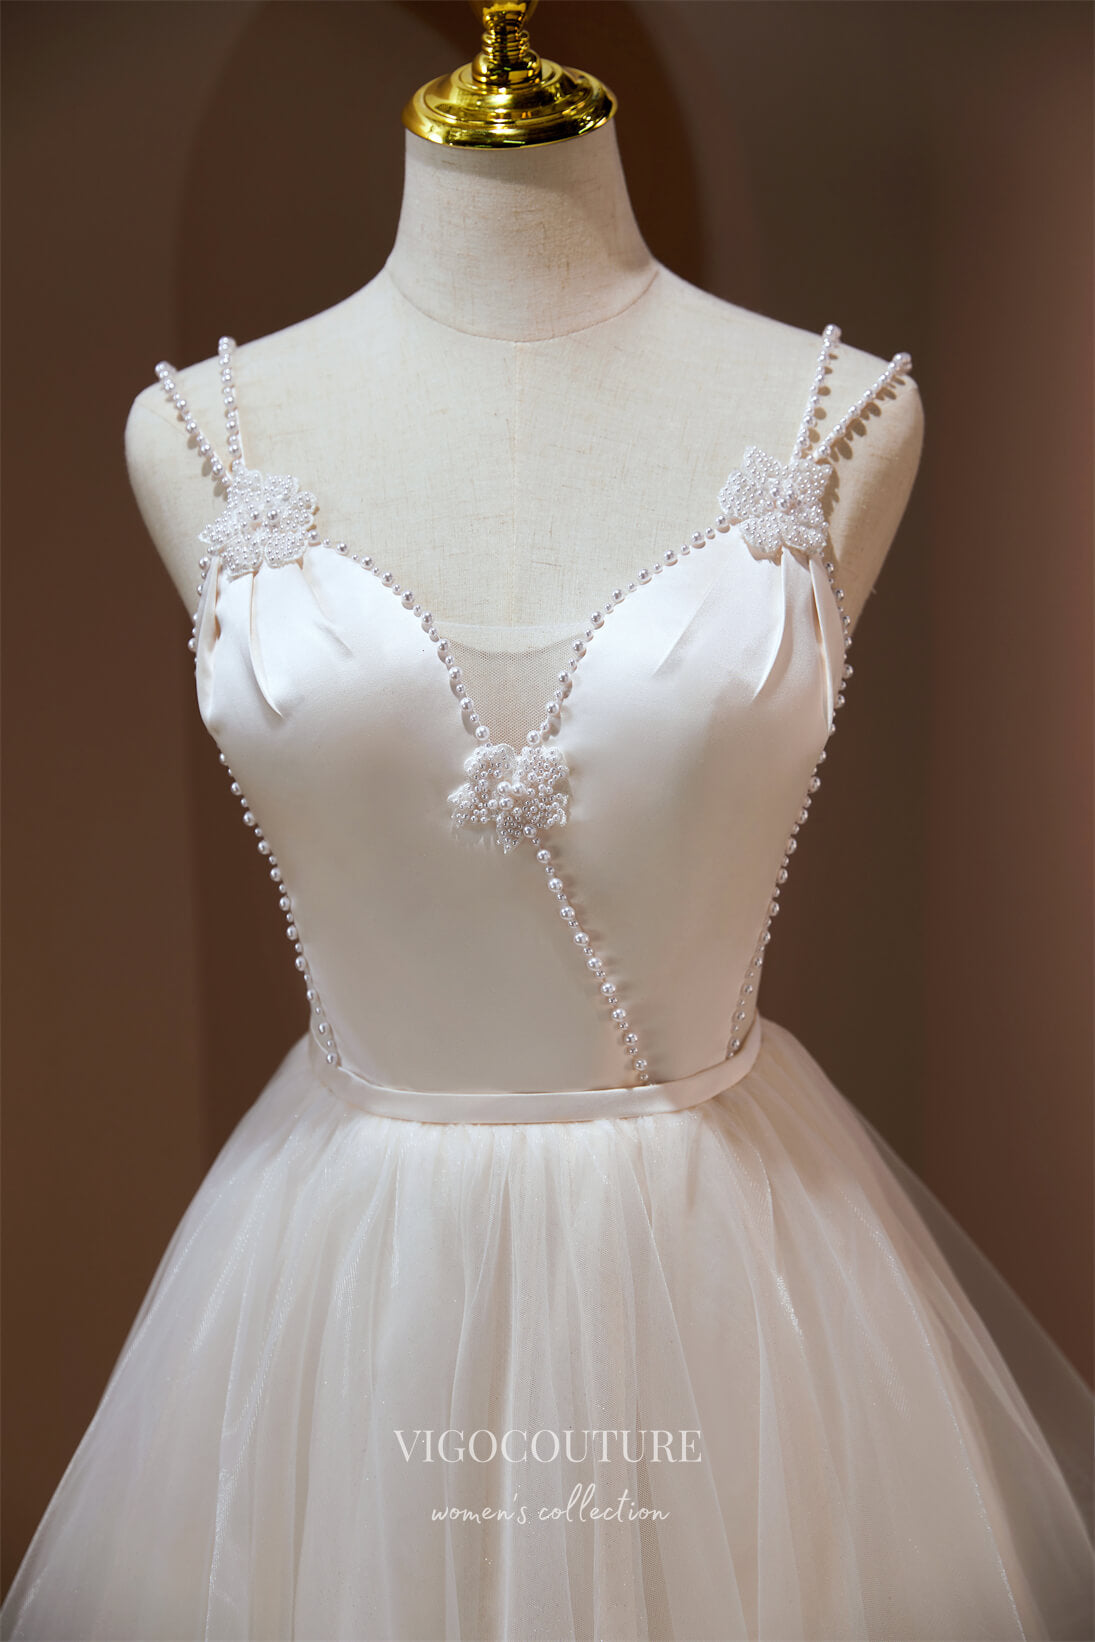 vigocouture-Spaghetti Strap Homecoming Dresses Beaded Hoco Dresses hc196-Prom Dresses-vigocouture-